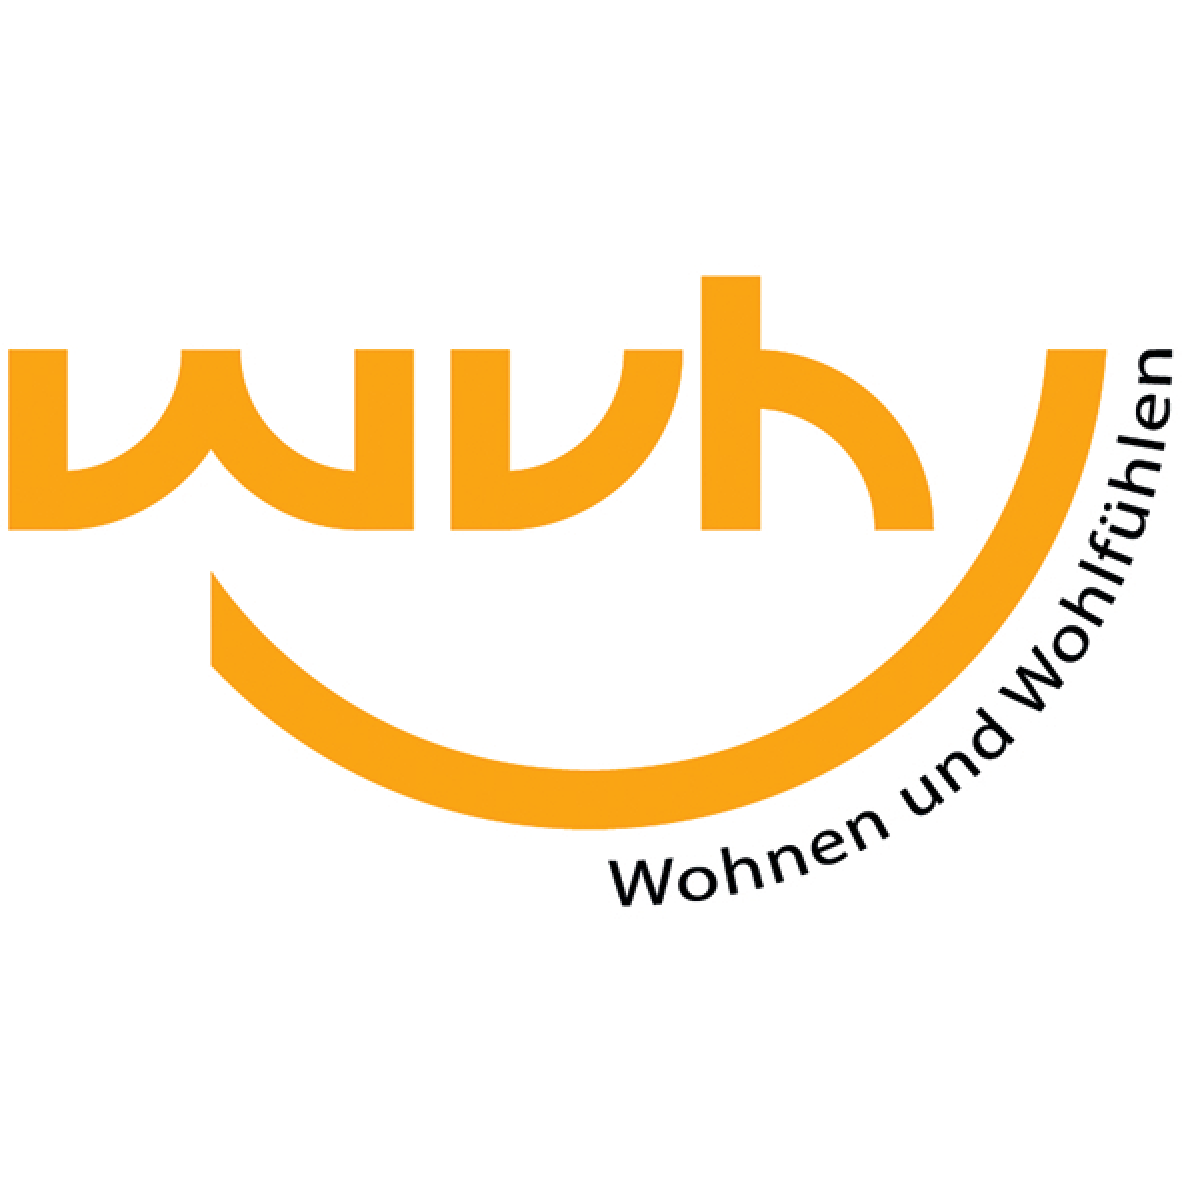 WVH Wohnungsbau- und Wohnungsverwaltungsgesellschaft Heidenau mbH in Heidenau in Sachsen - Logo